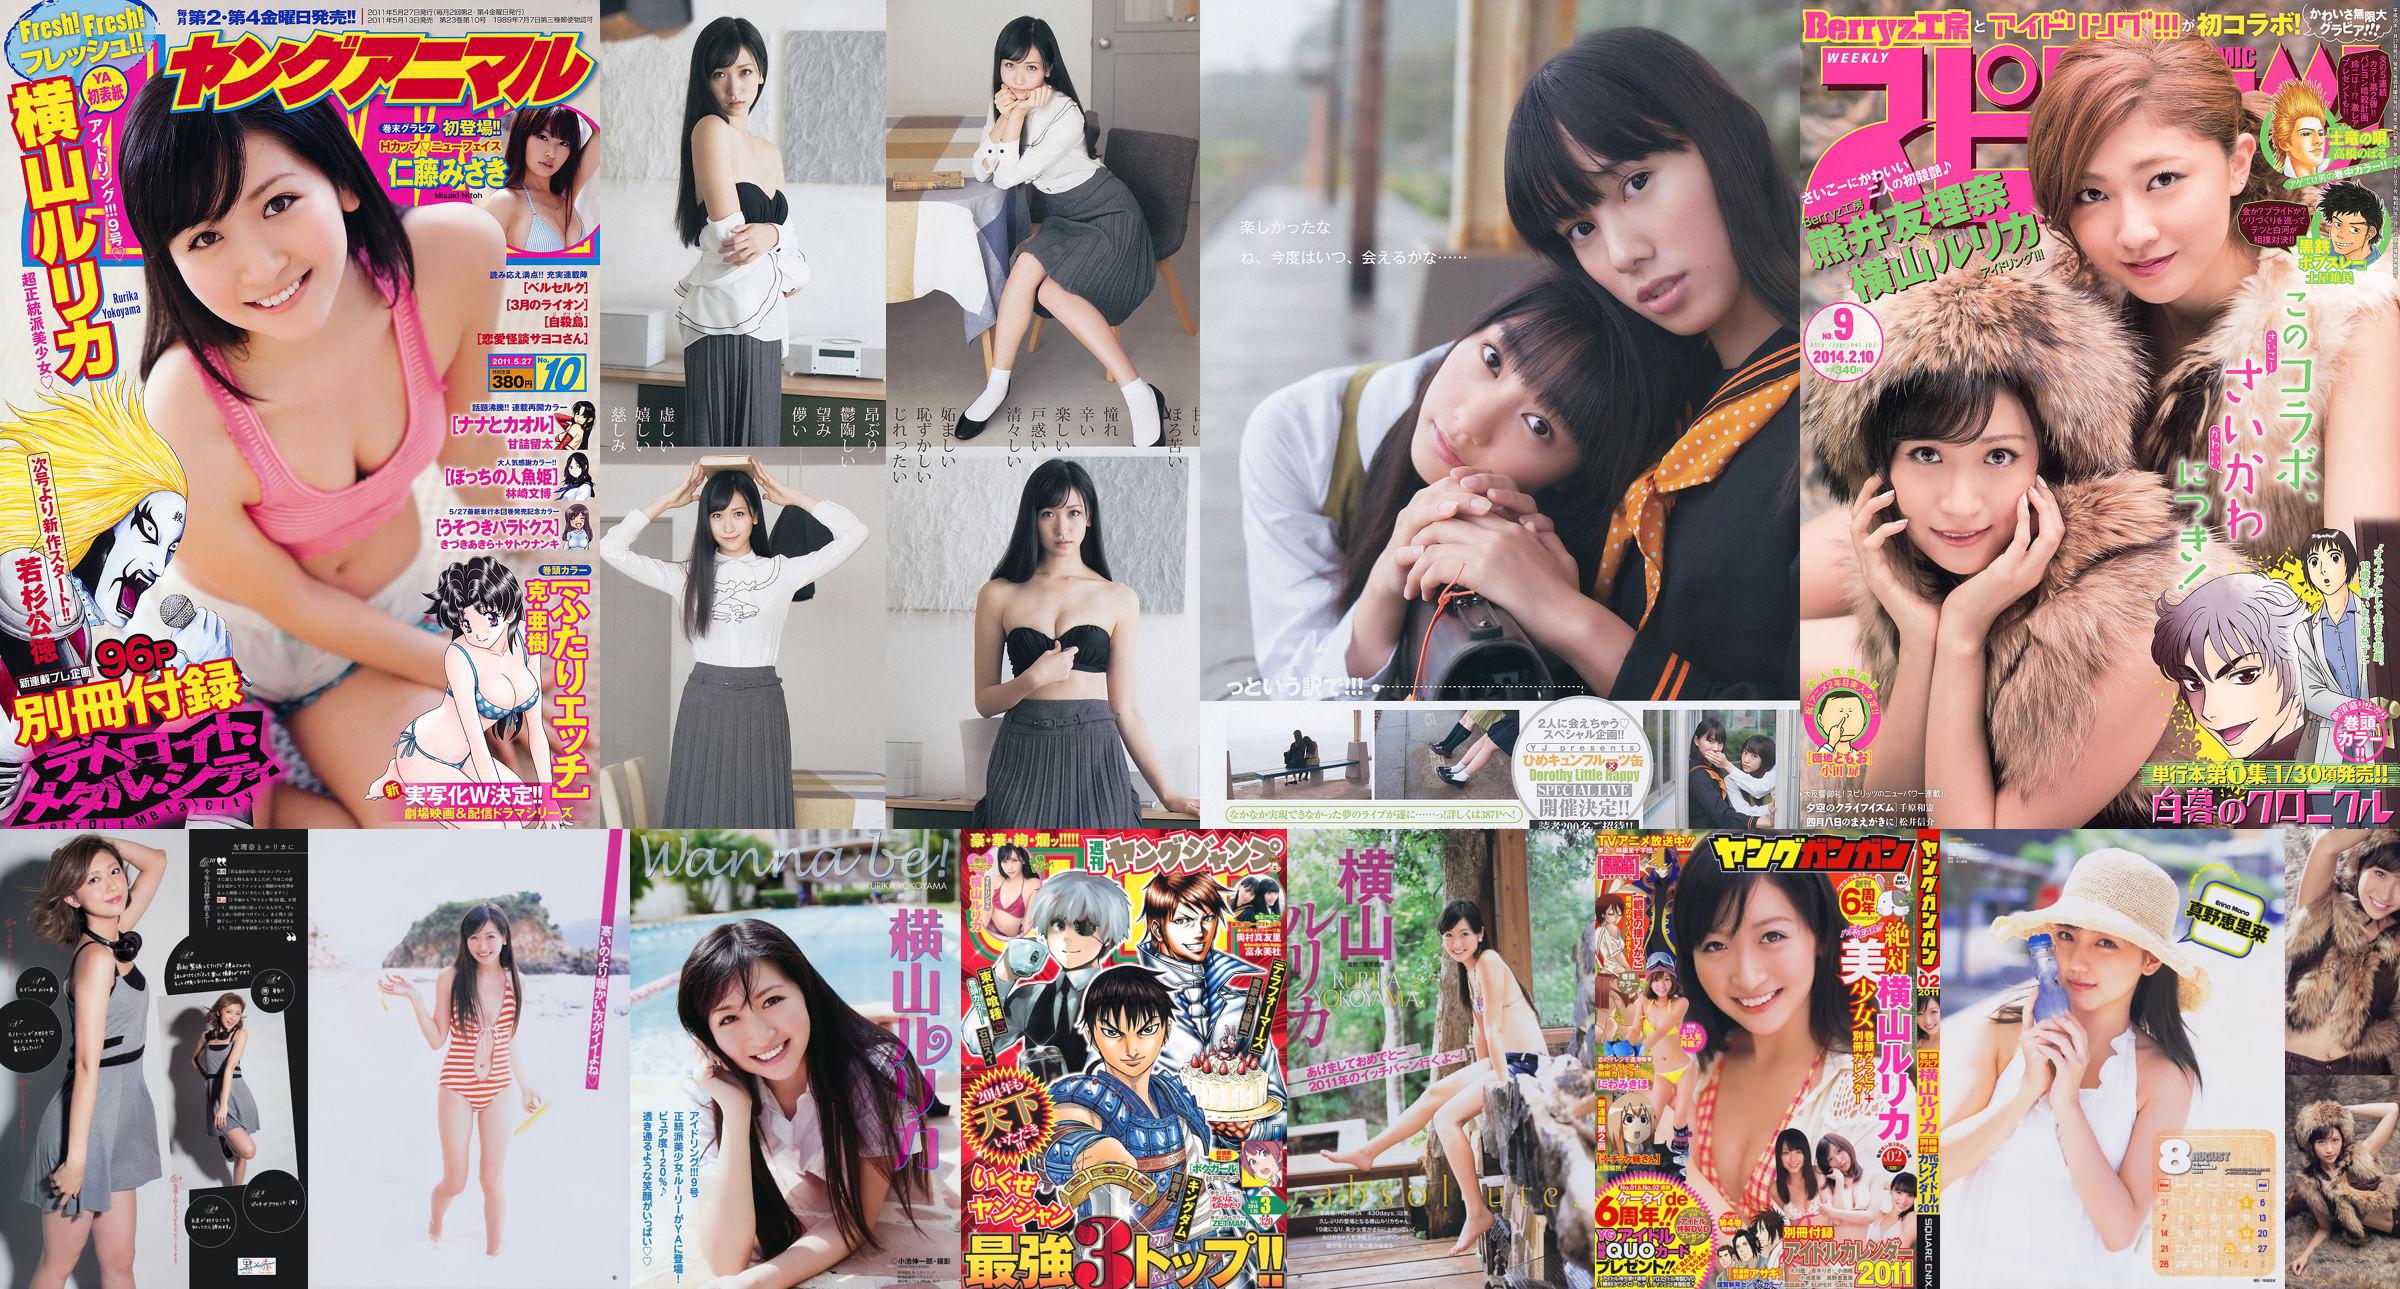 [Semangat Komik Besar Mingguan] Yokoyama Rurika Kumai Yurina 2014 Majalah Foto No. 09 No.7eae32 Halaman 1